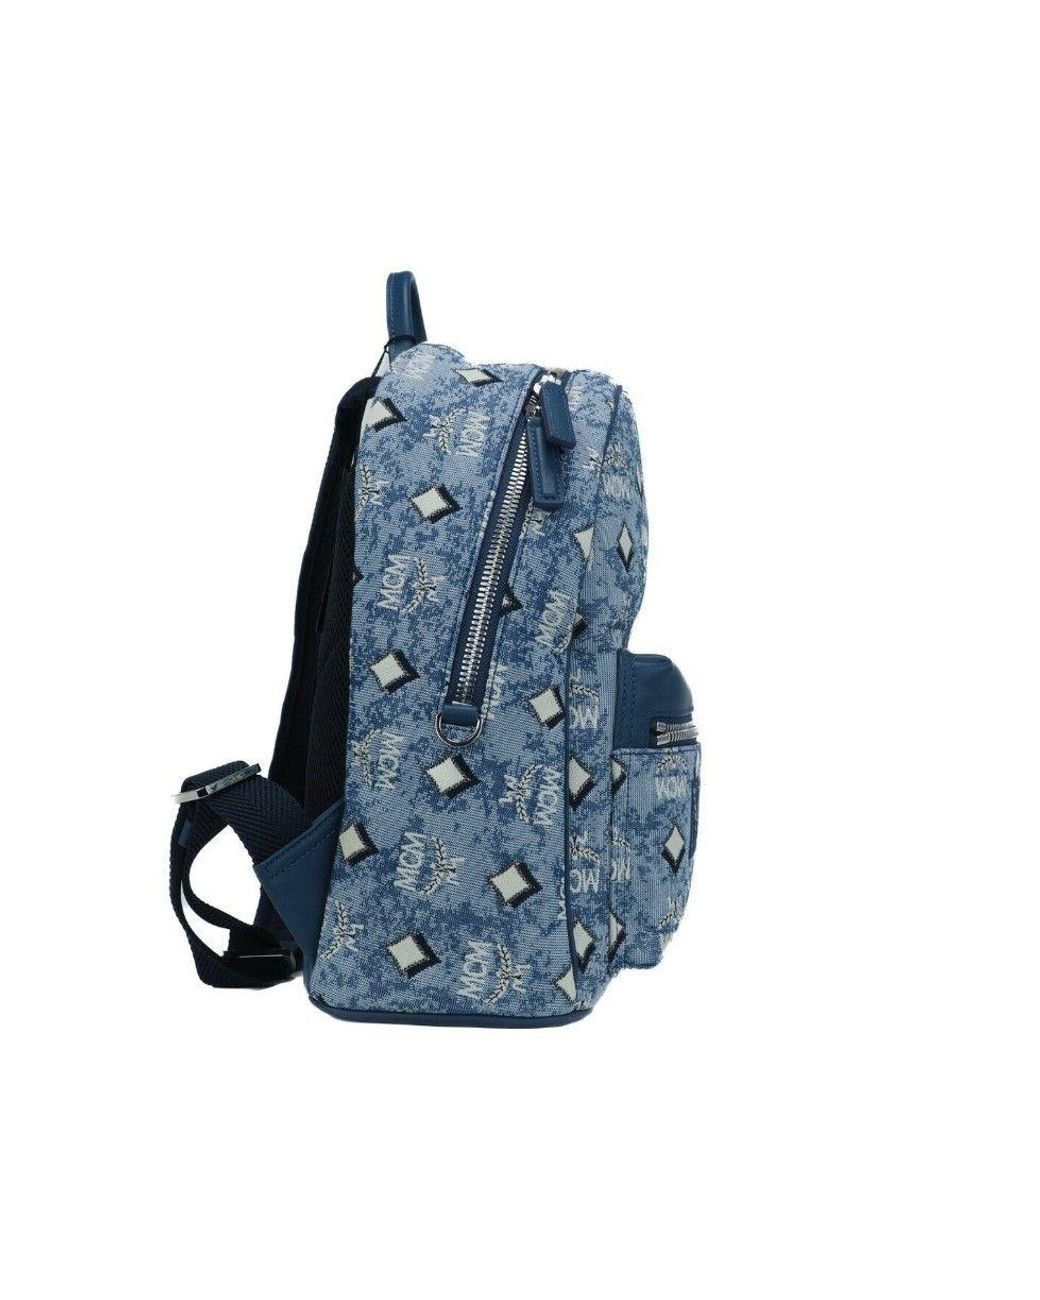 Medium Brandenburg Backpack in Vintage Denim Jacquard Blue